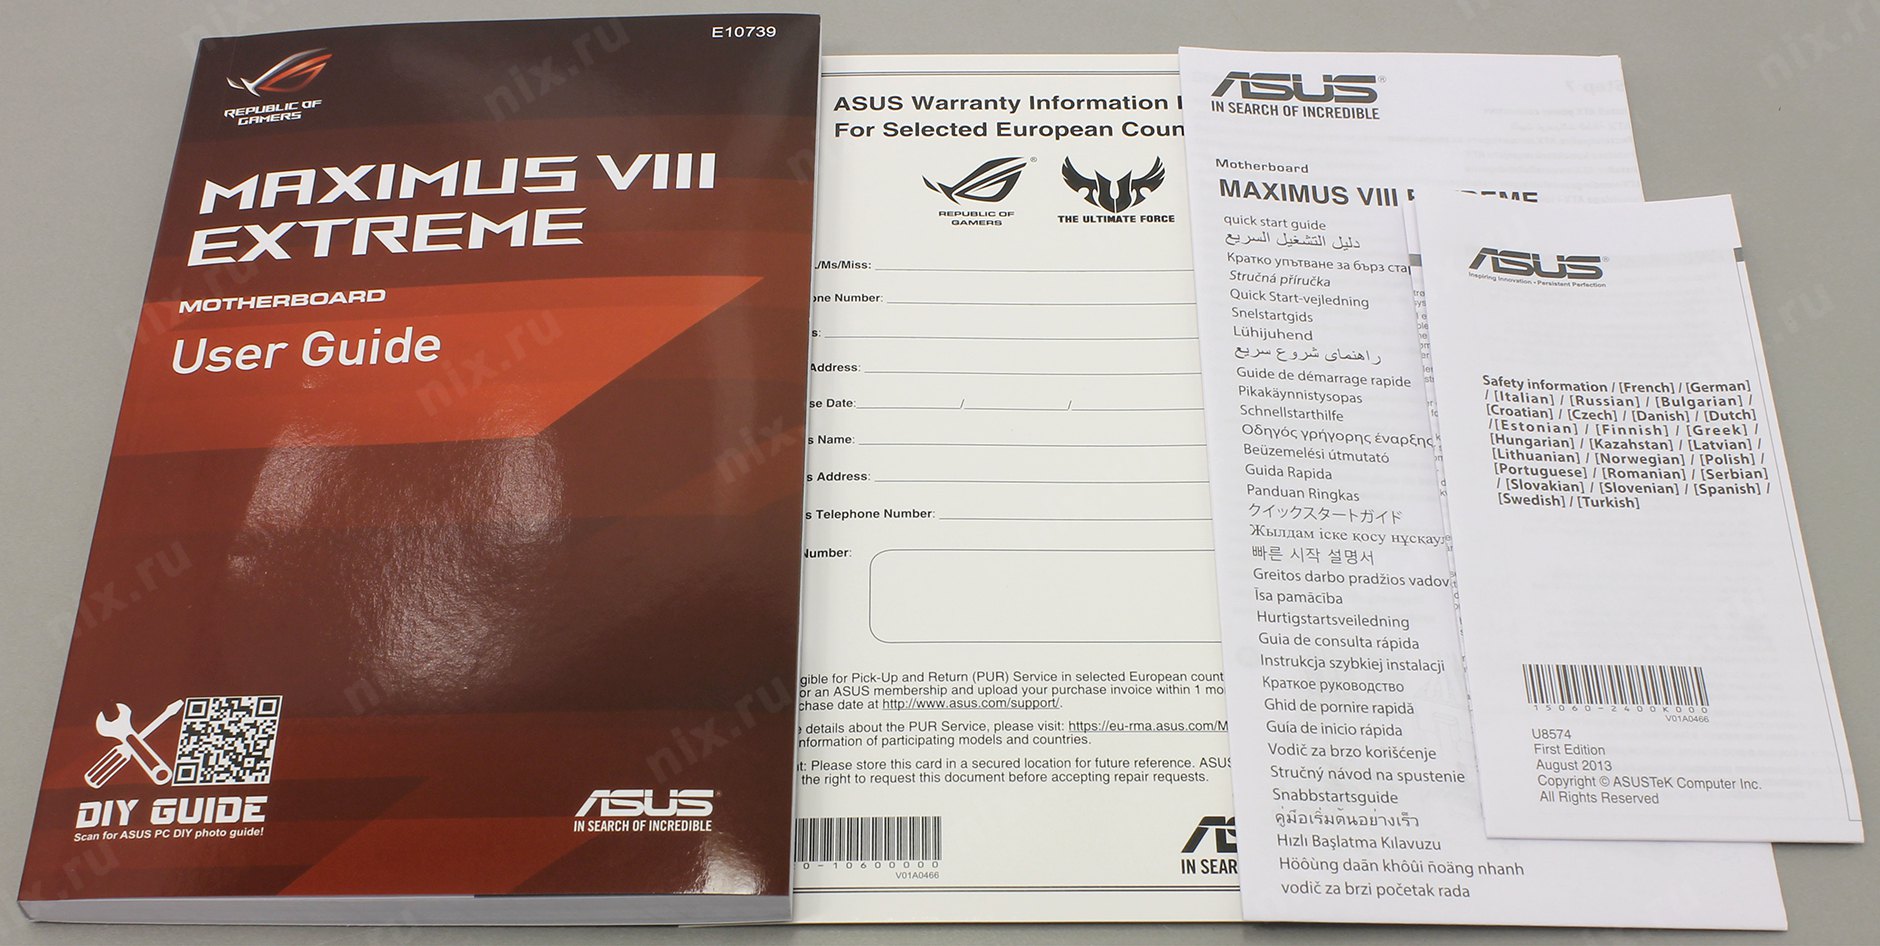 Гарантийная асус в москве. Z170 ASUS Maximus VIII Formula. ASUS Warranty information form.